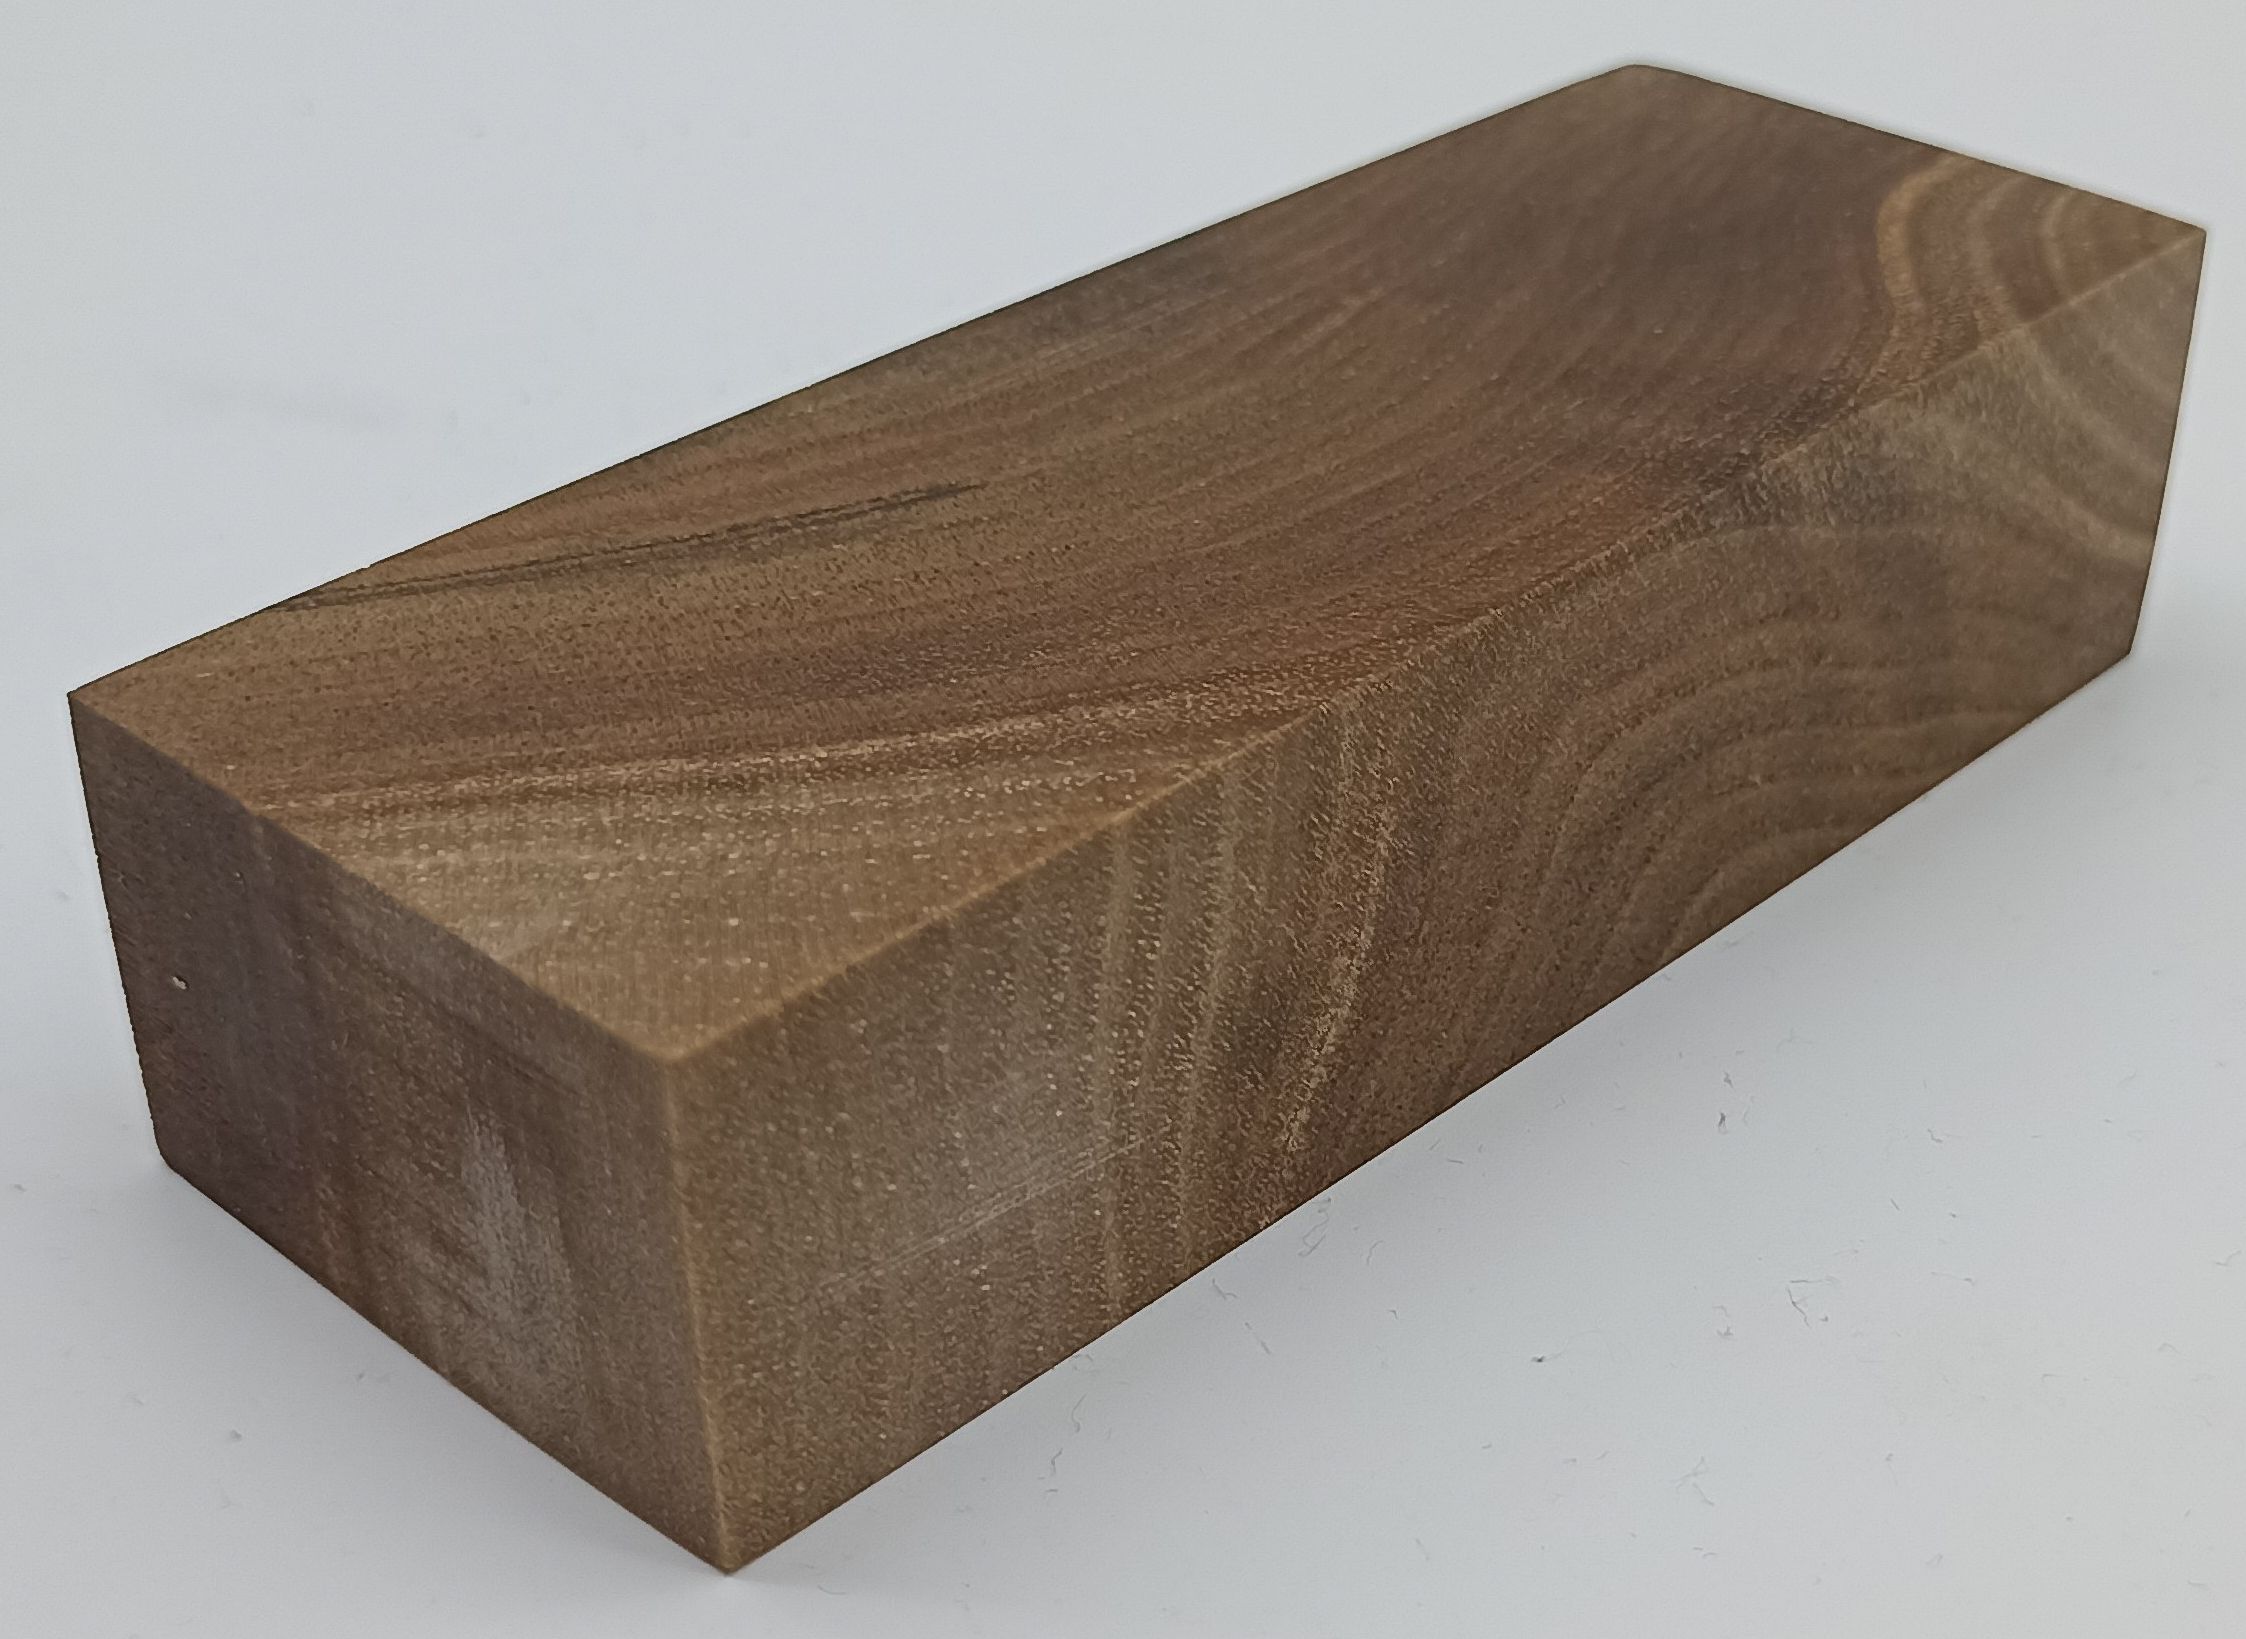 Stabilizované dřevo - ořech  128 x 47 x 29 mm